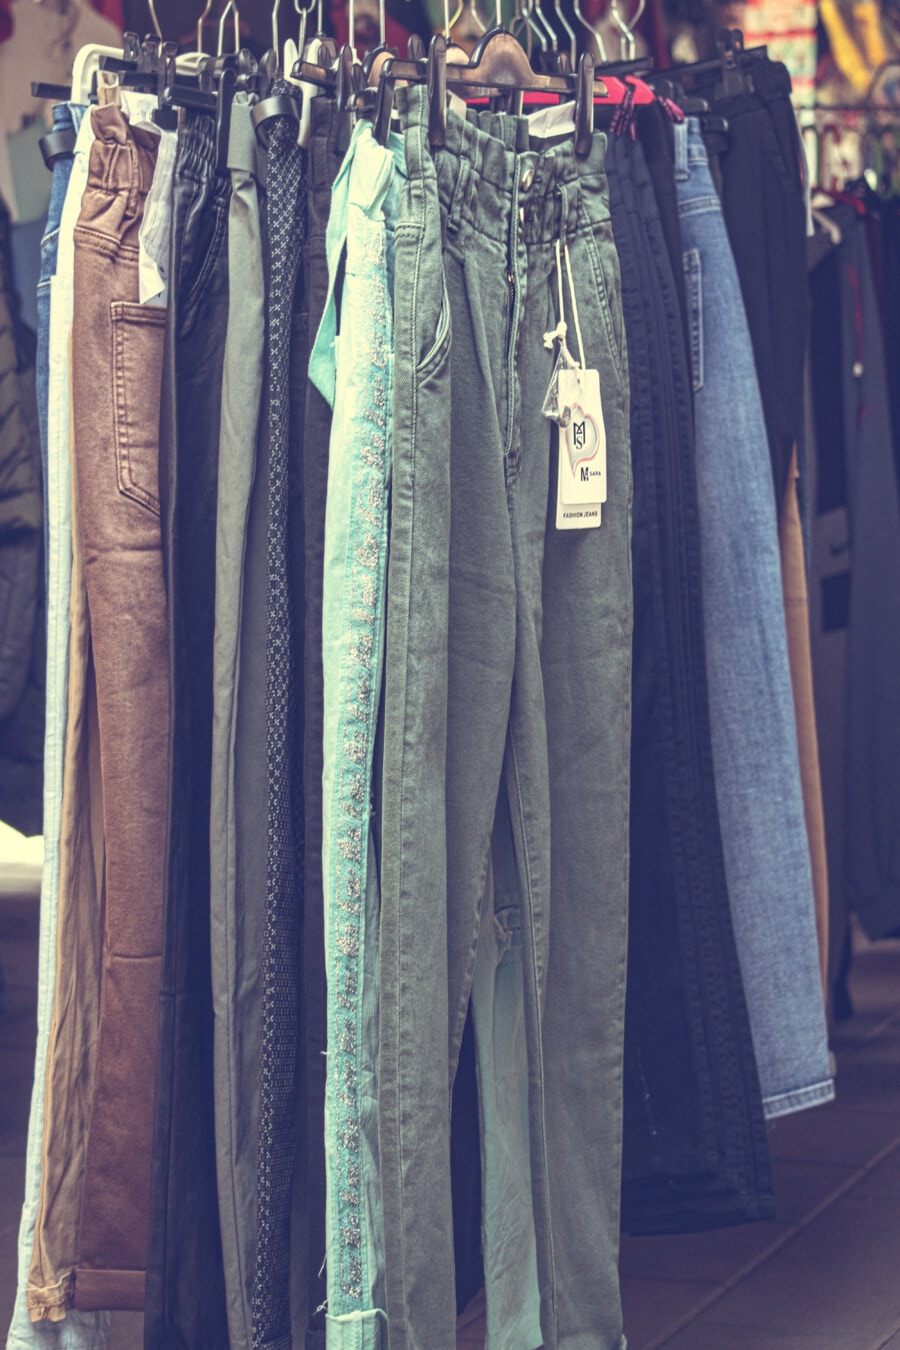 裤, 裤子, 购物, 店, 纺织, 牛仔, 精品, 股票, 衣柜, 衣架